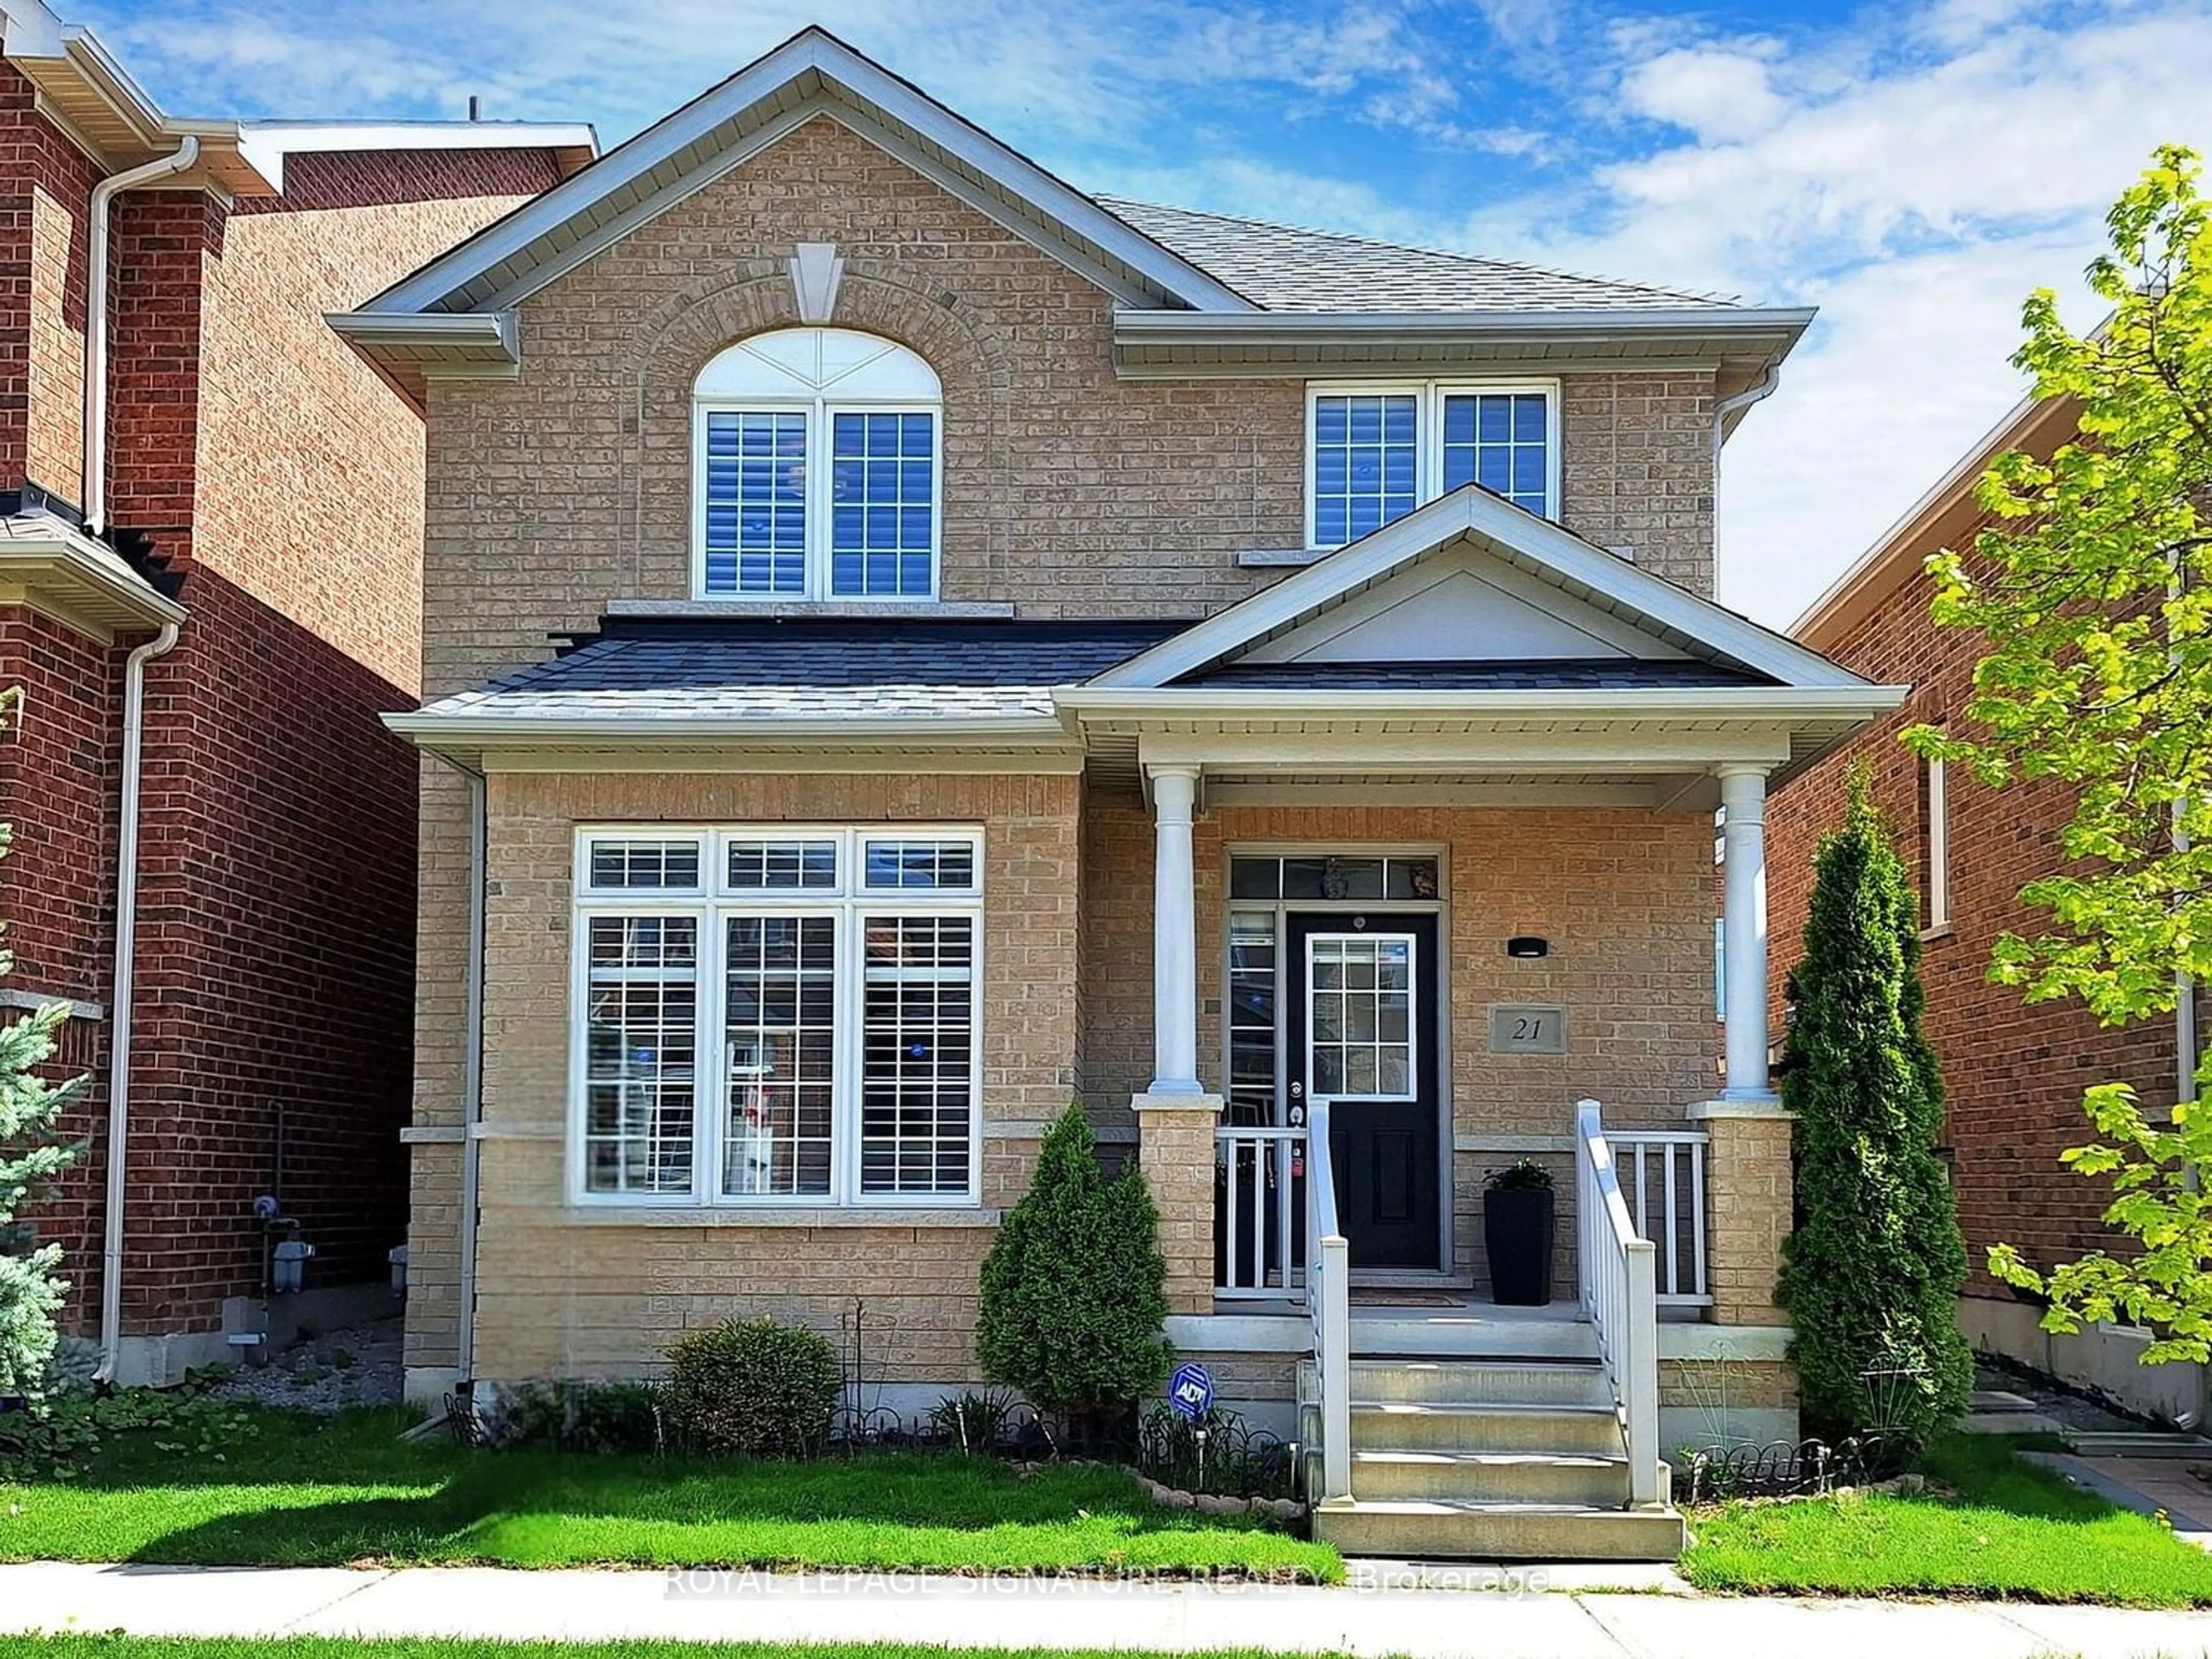 Home with brick exterior material for 21 Honey Glen Ave, Markham Ontario L6B 0V1